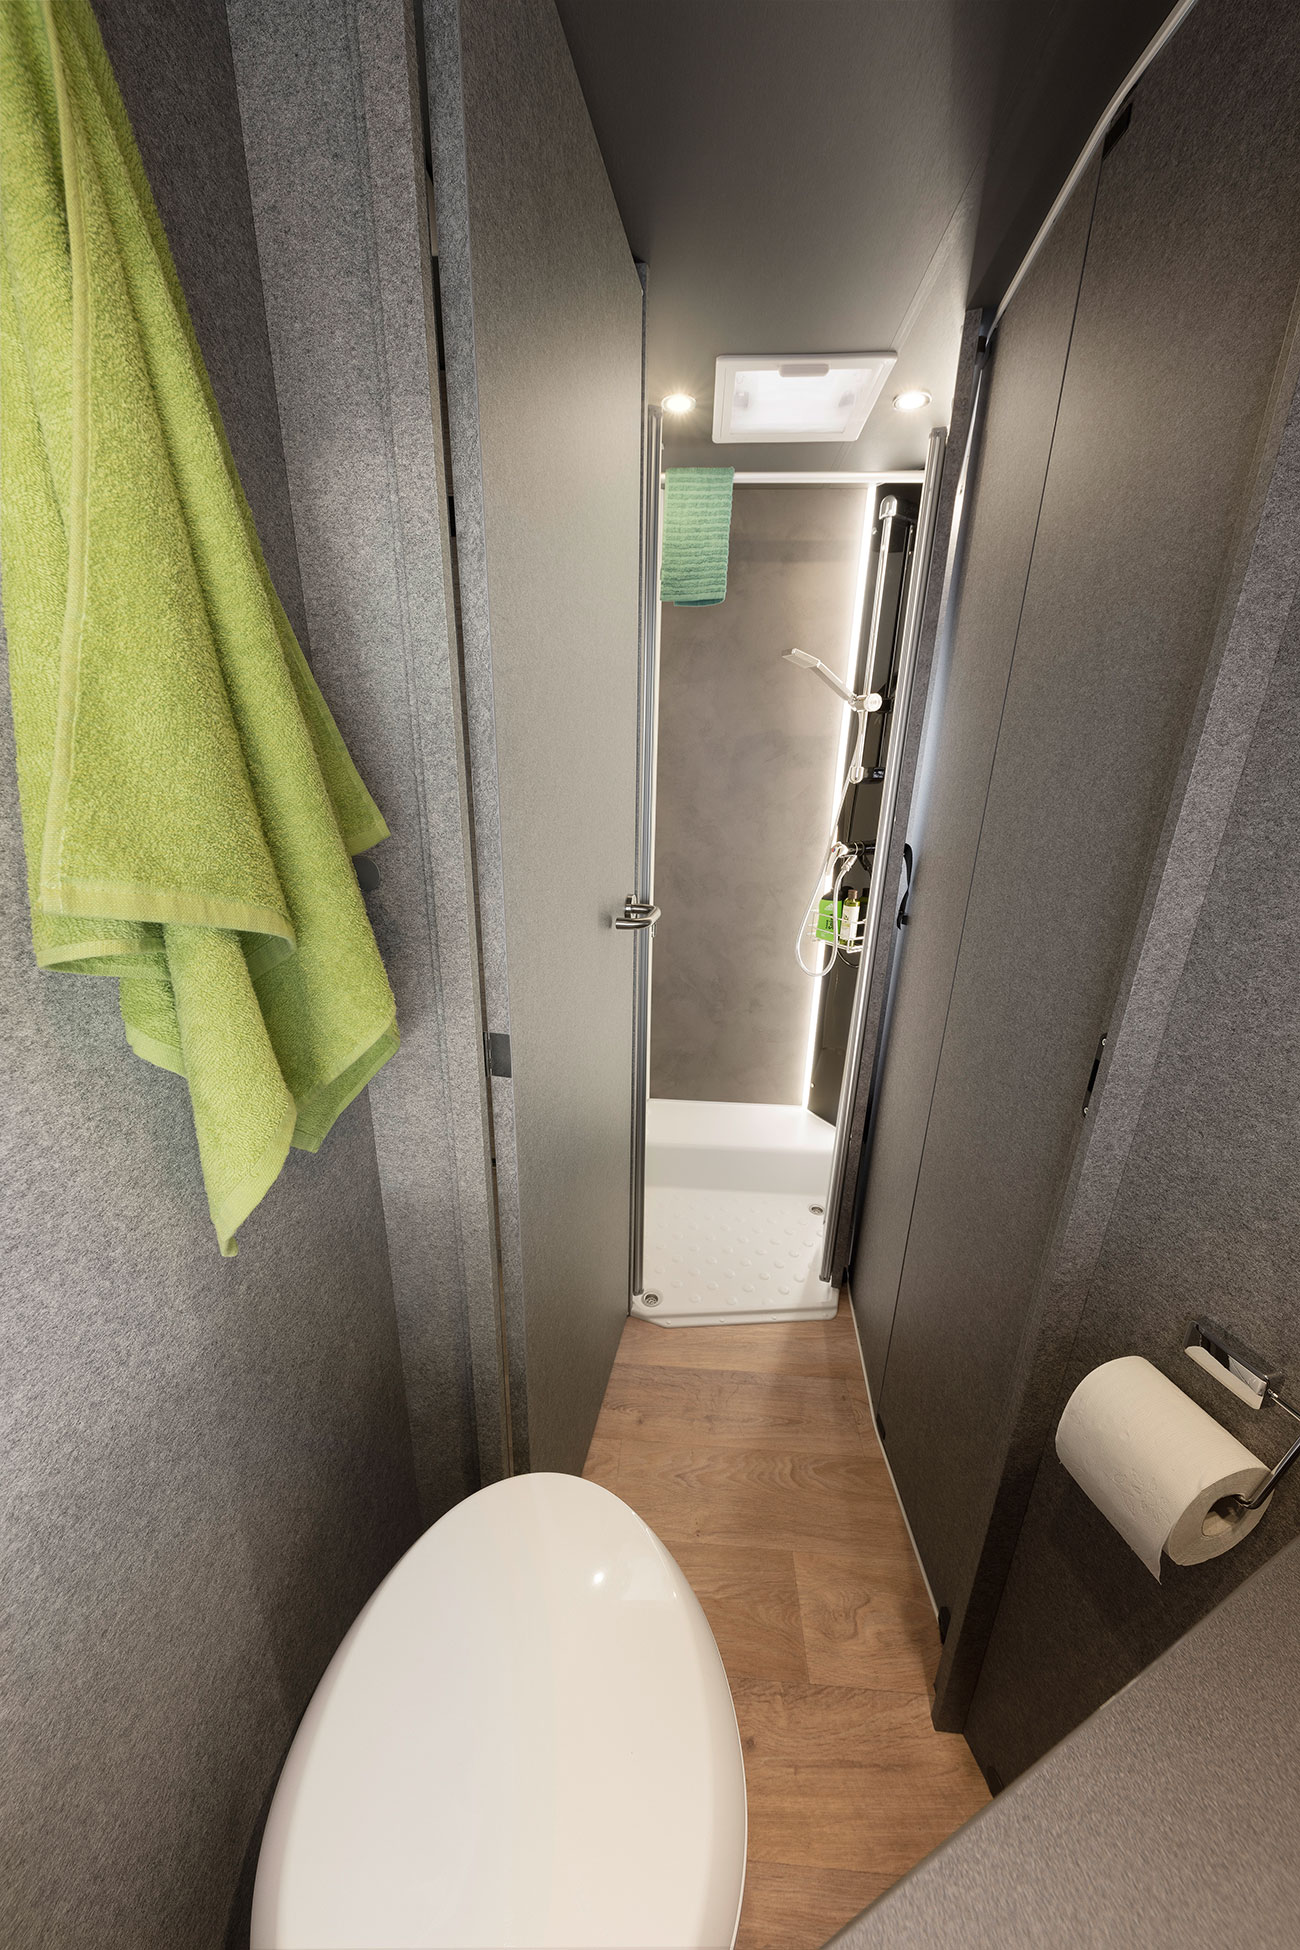 Sprytne rozwiązanie: łazienka wydzielana (w zależności od modelu). Drzwi do łazienki zamykają przejście do pomieszczenia mieszkalnego. W ten sposób powstają duża łazienka i garderoba zapewniające pełną prywatność. Od sypialni łazienkę można oddzielić drewnianymi drzwiami przesuwnymi.